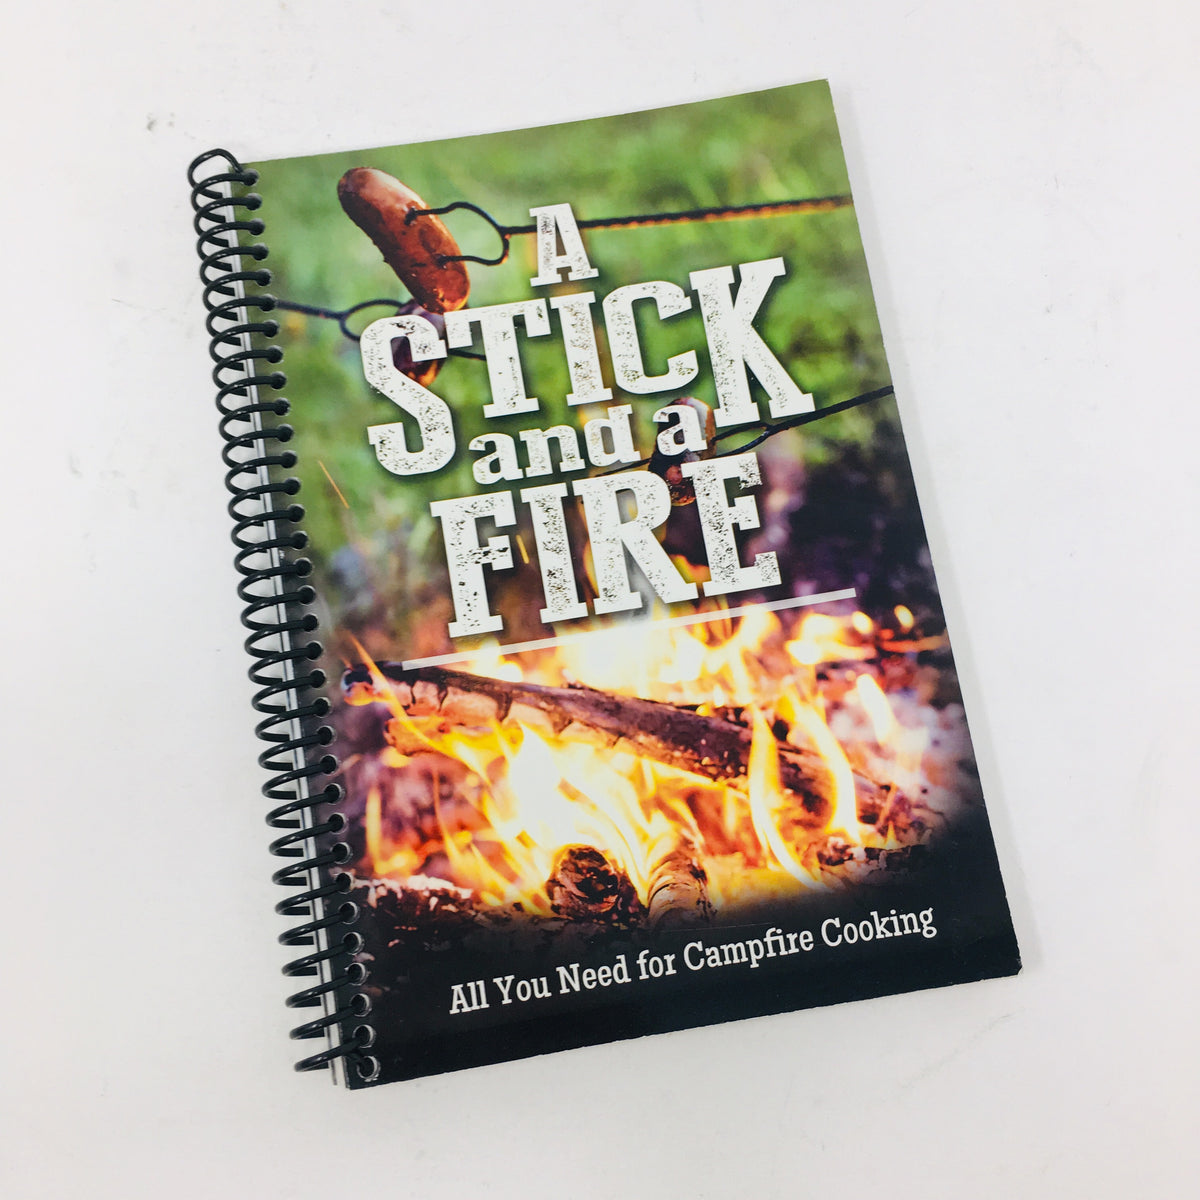 A Stick and a Fire Cookbook